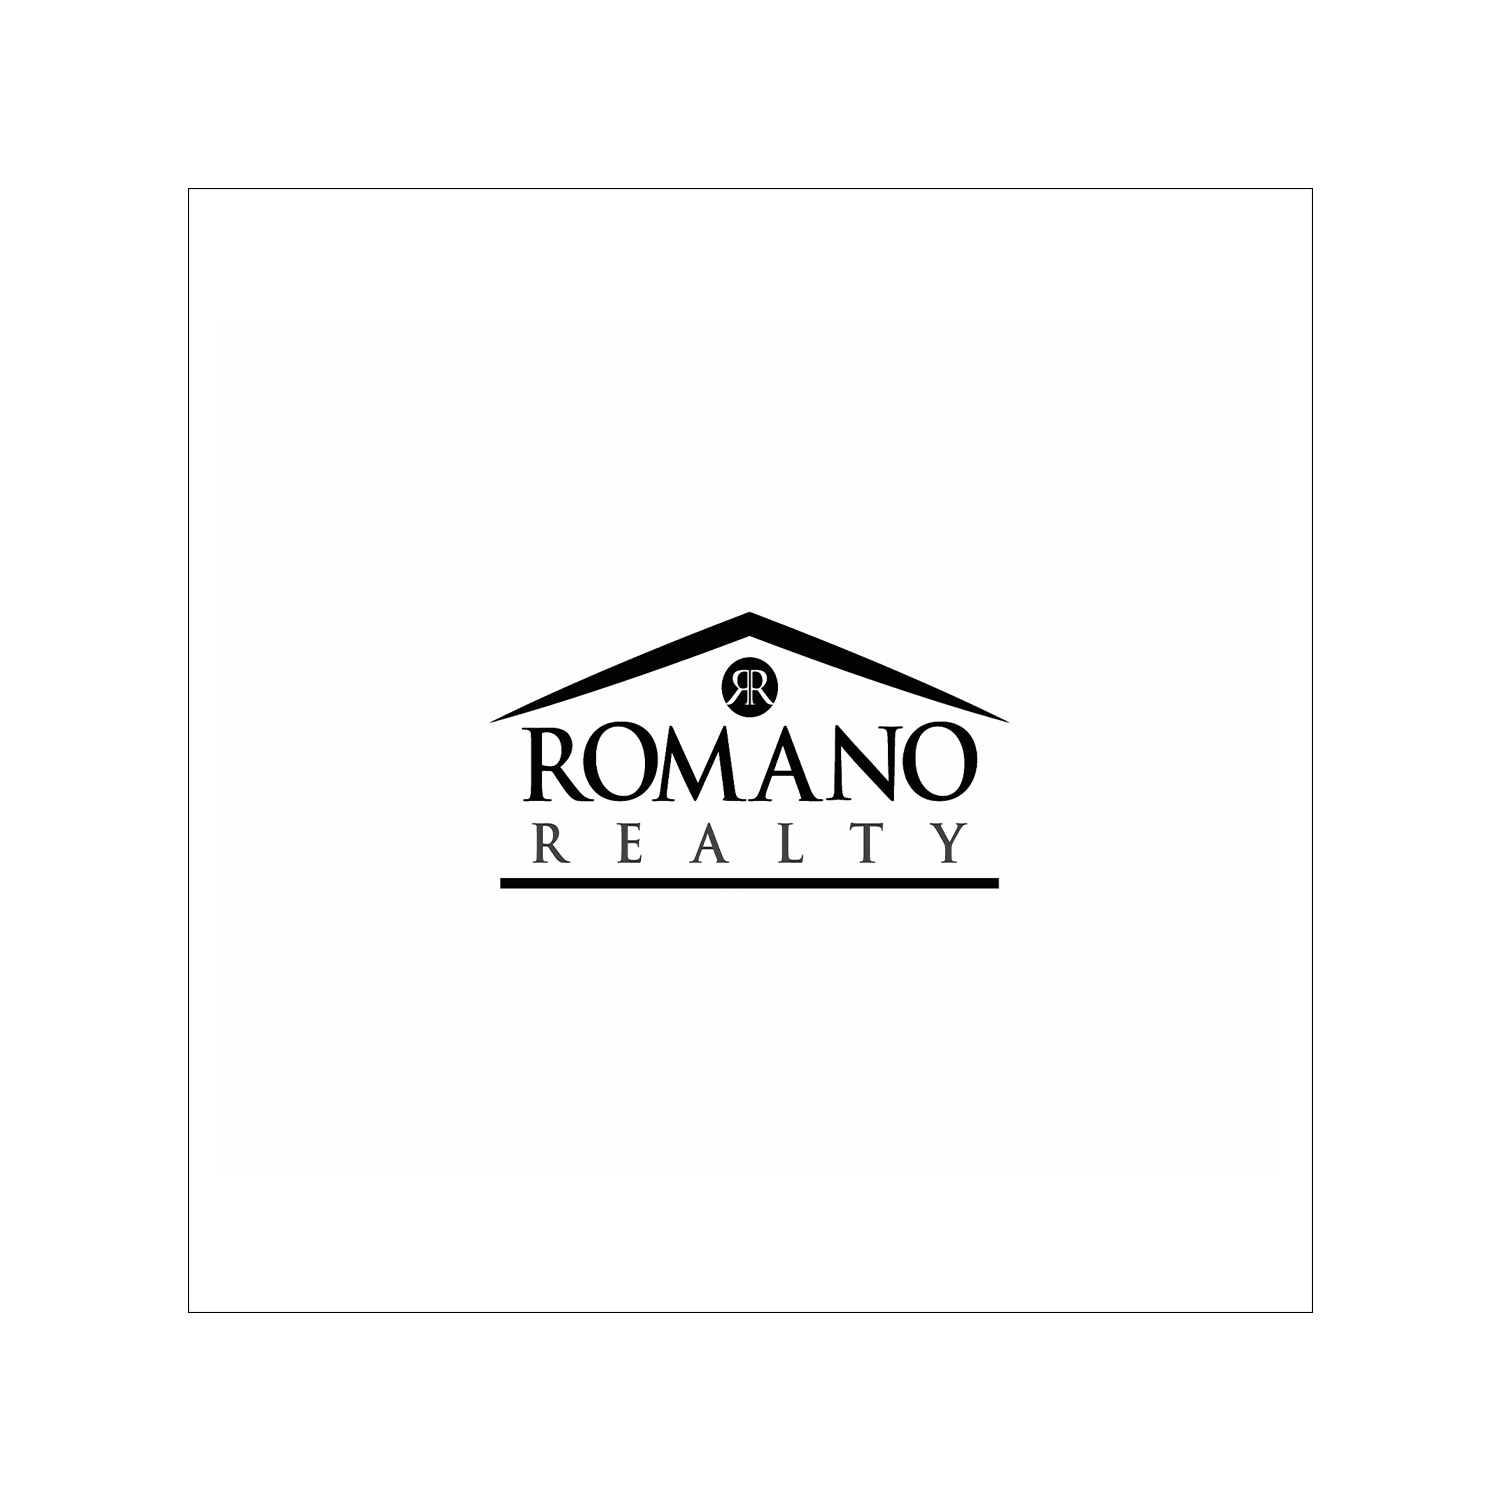 Romano Realty